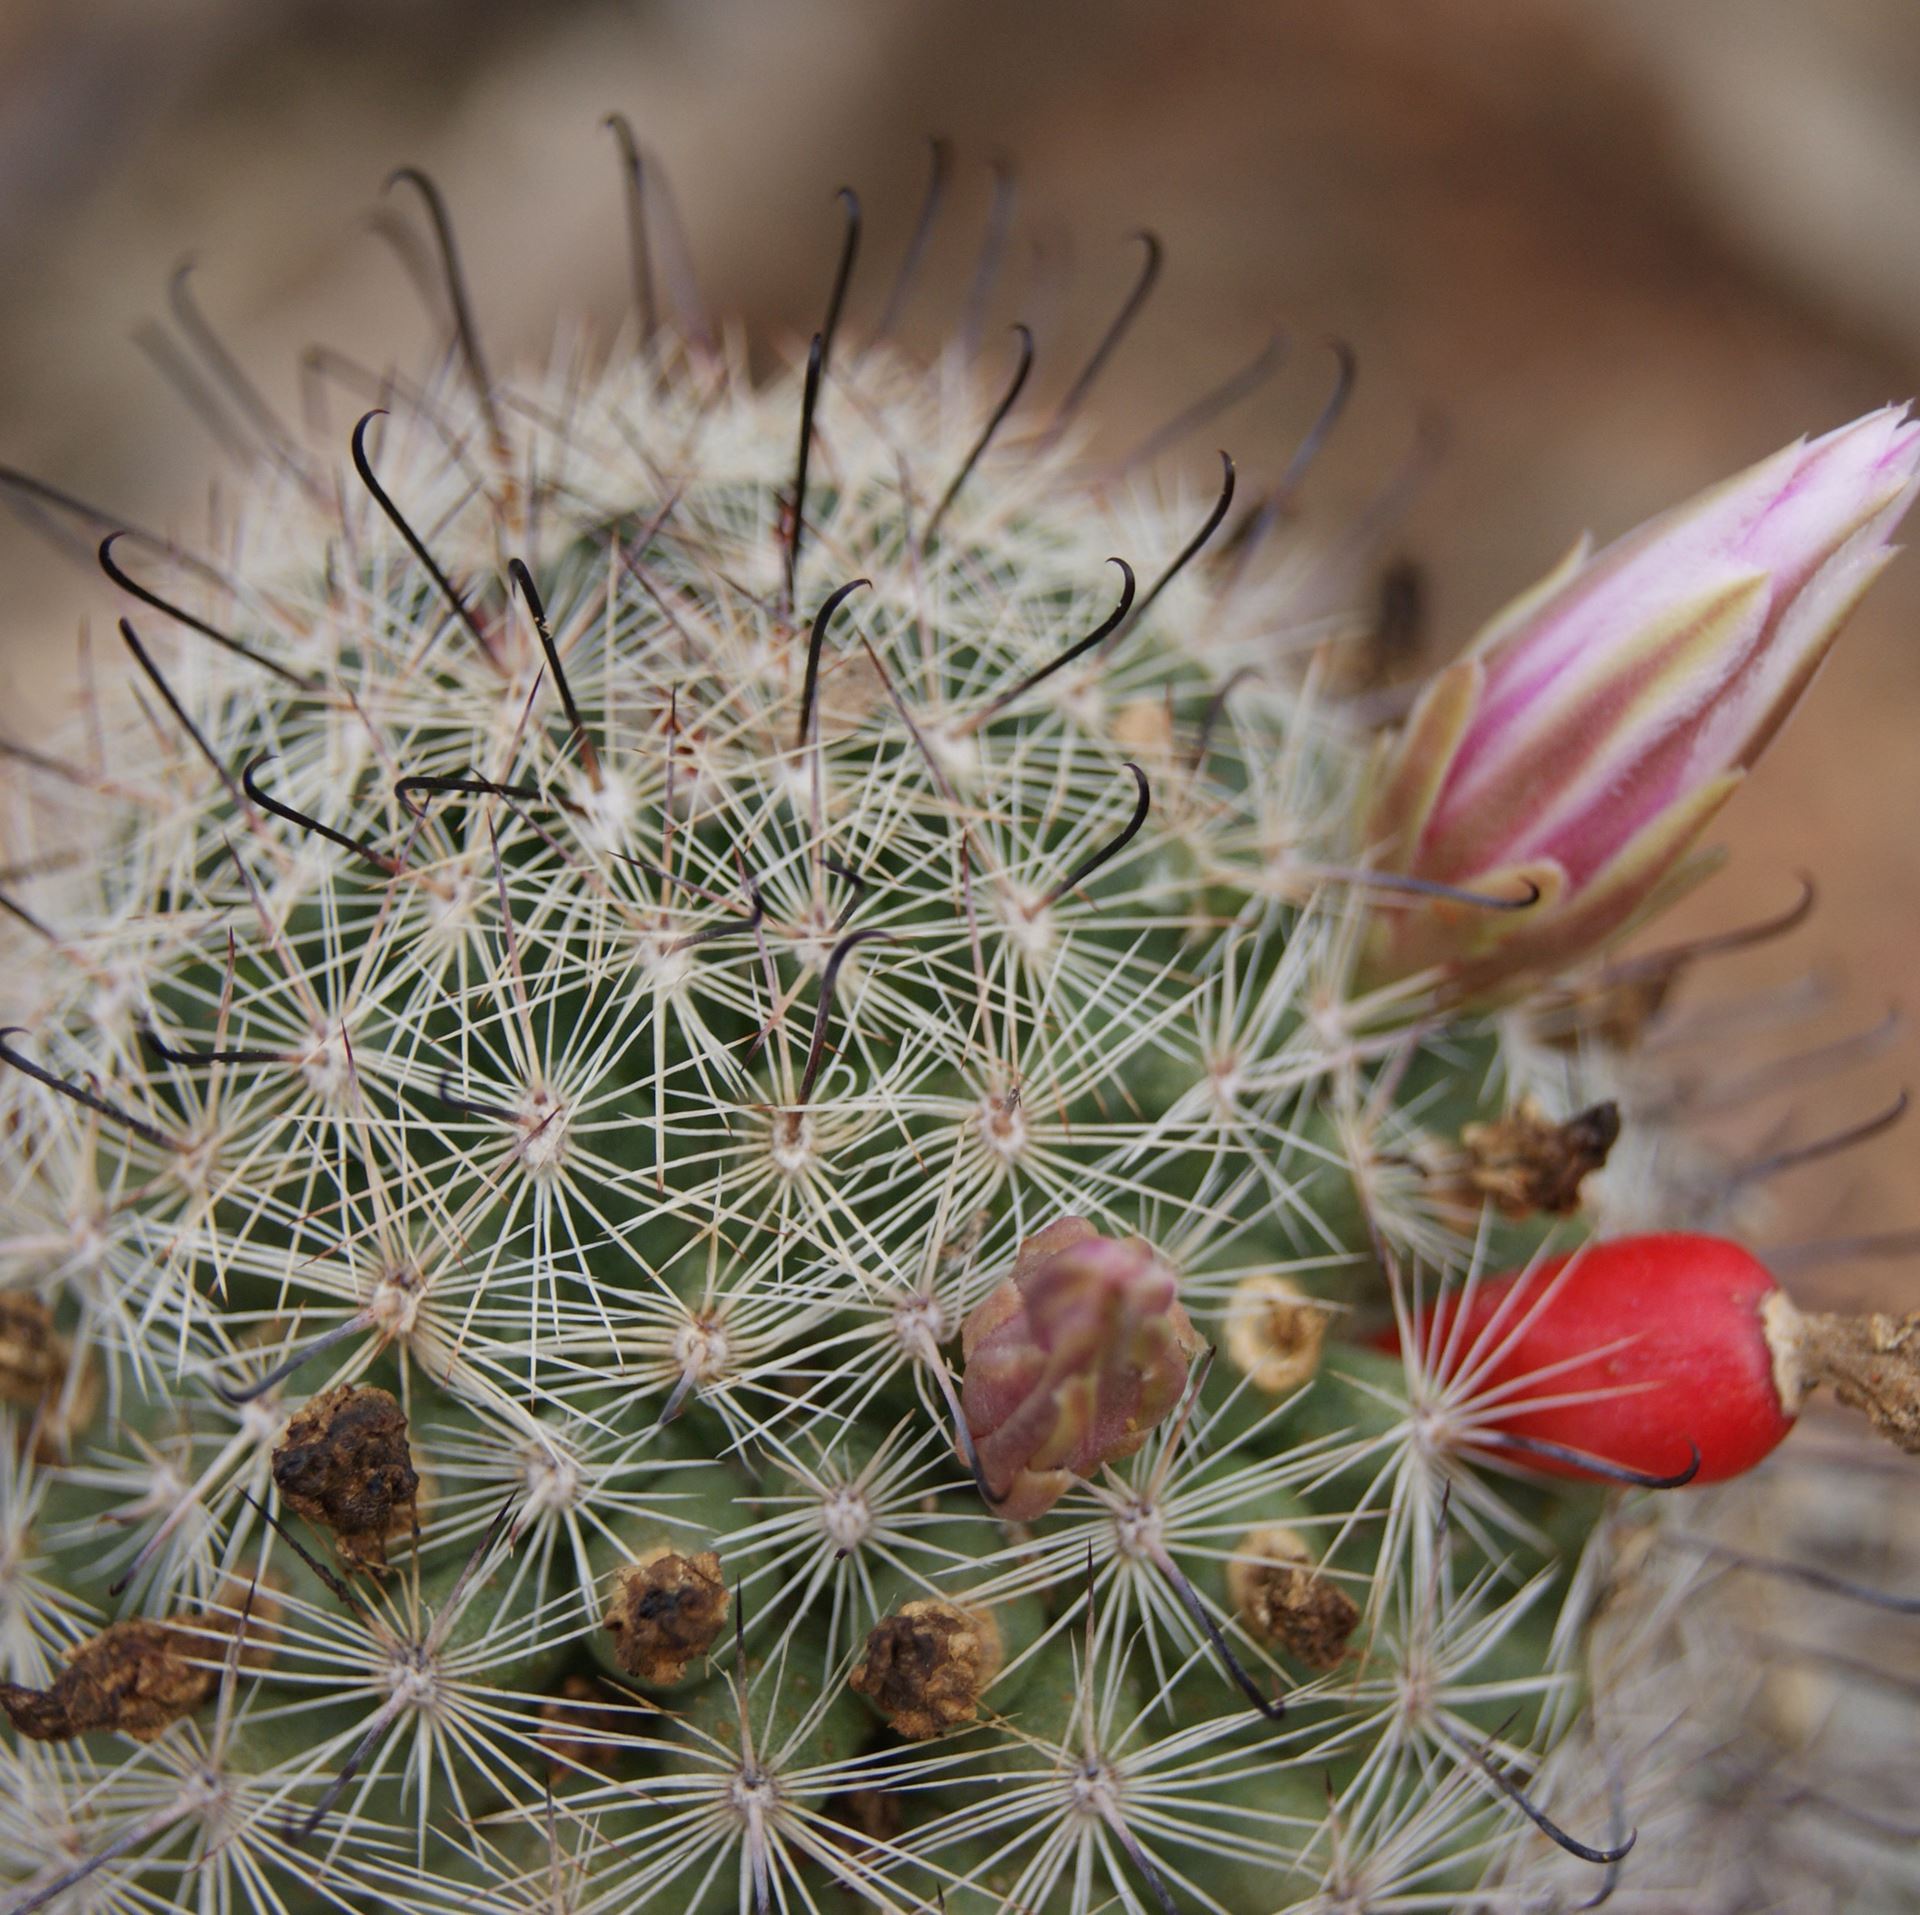 Pincusion cactus